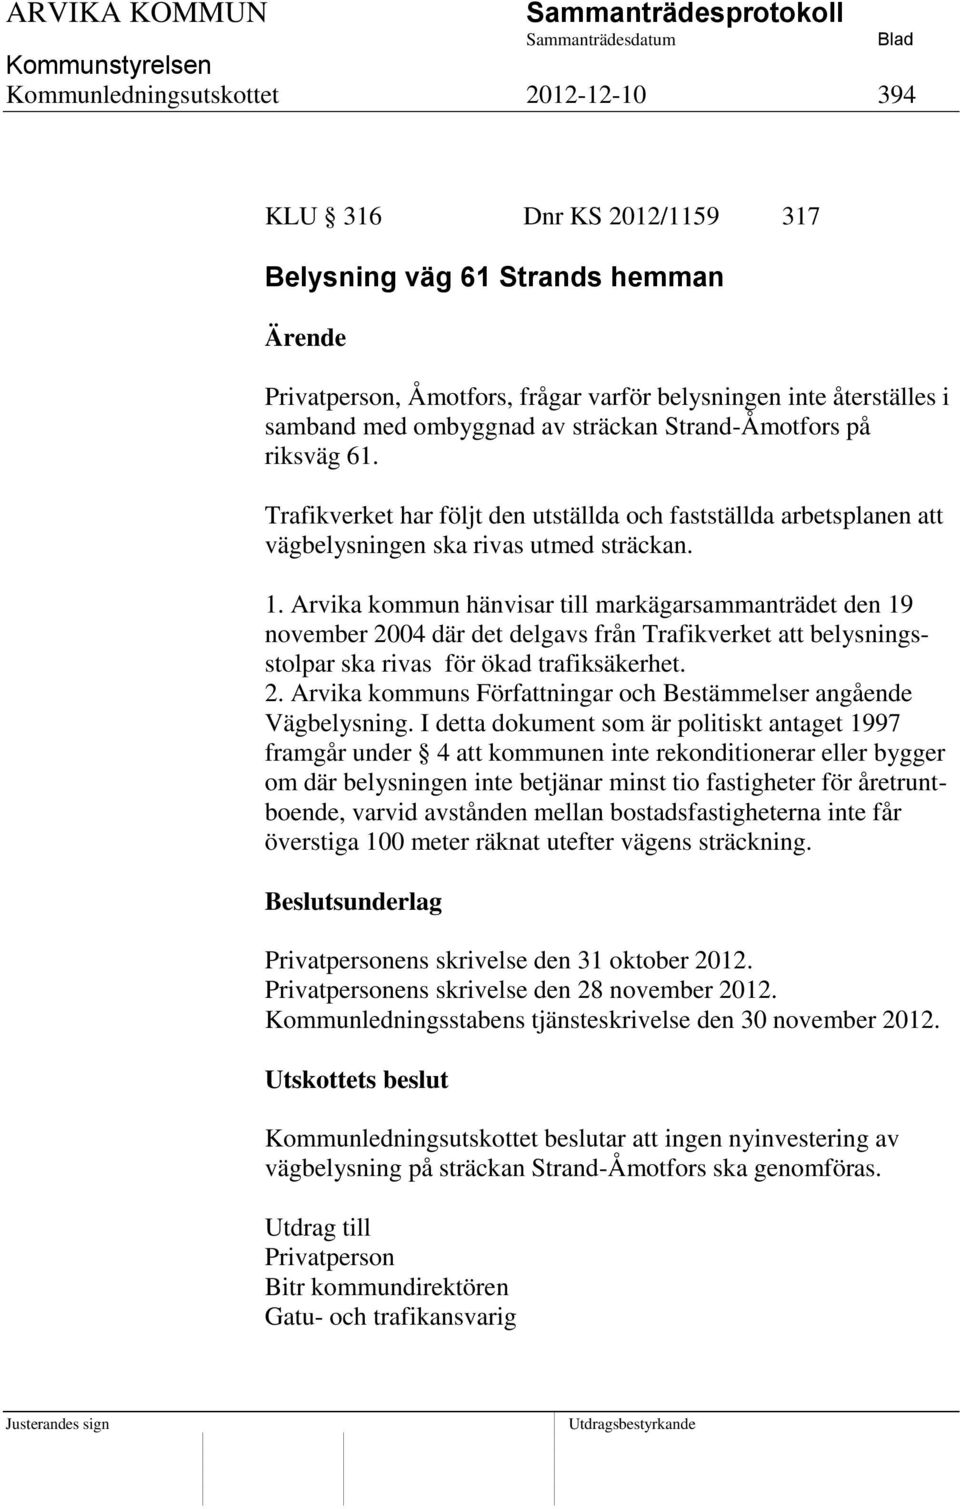 Arvika kommun hänvisar till markägarsammanträdet den 19 november 2004 där det delgavs från Trafikverket att belysningsstolpar ska rivas för ökad trafiksäkerhet. 2. Arvika kommuns Författningar och Bestämmelser angående Vägbelysning.